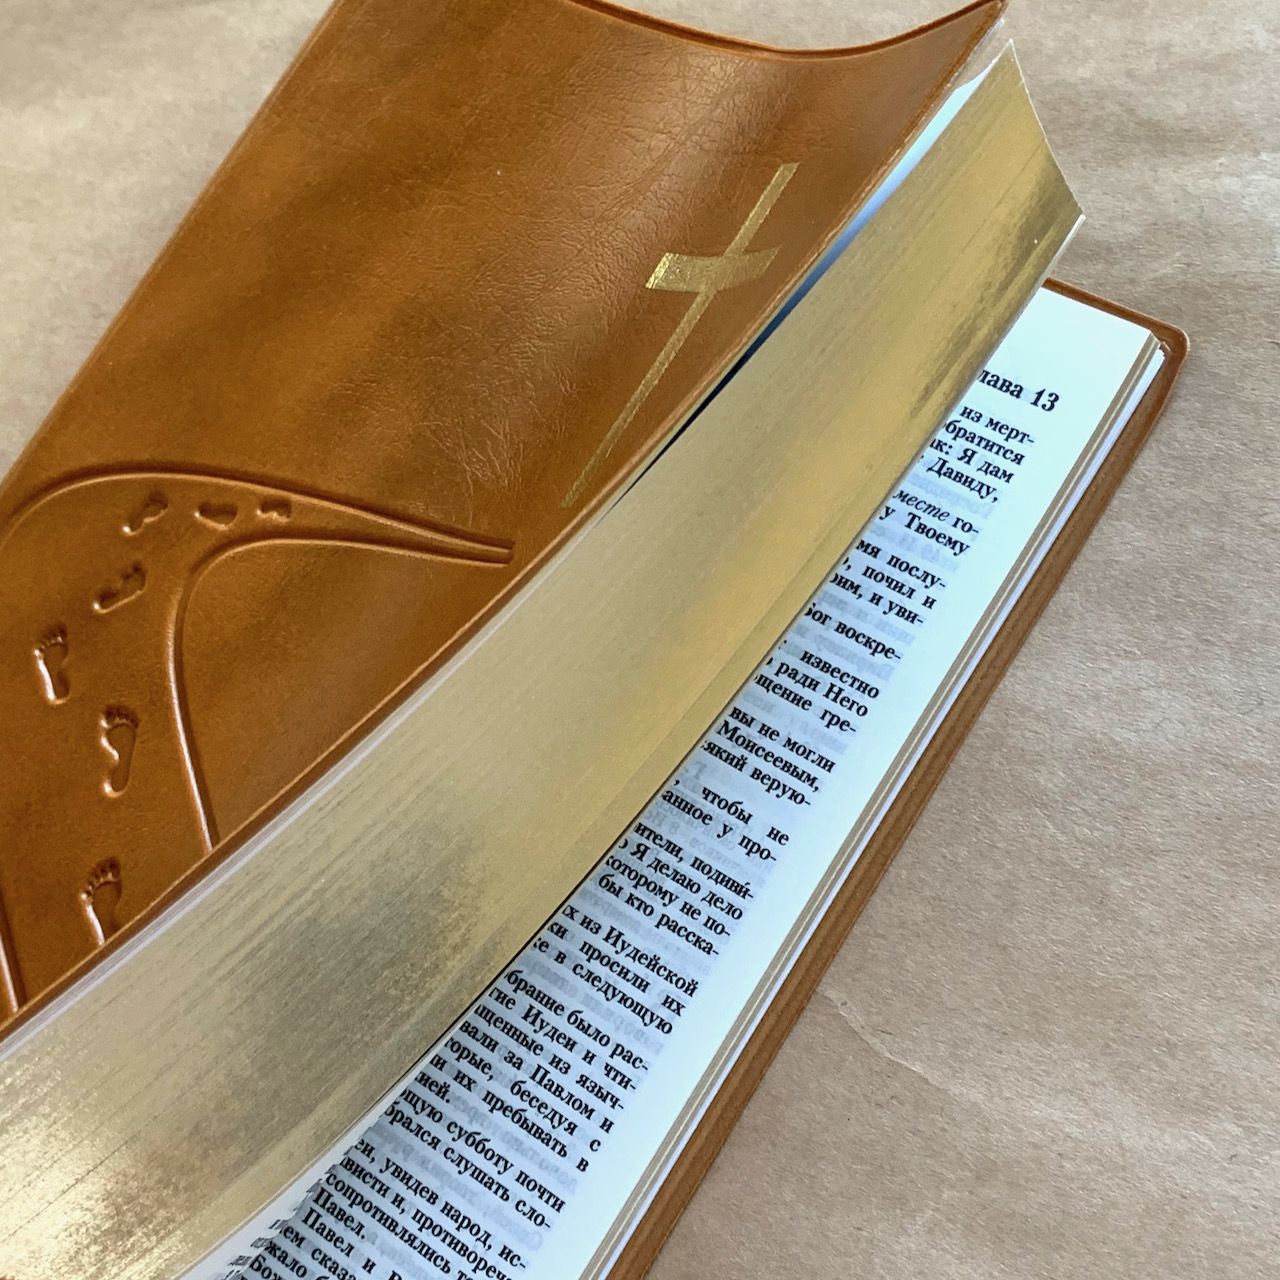 Библия 055 код B4 7073 переплет из искусственной кожи, цвет янтарь дизайн "дорога ко Кресту", надпись "Библия" с торца, средний формат, 140*213 мм, параллельные места по центру страницы, золотой обрез, крупный шрифт